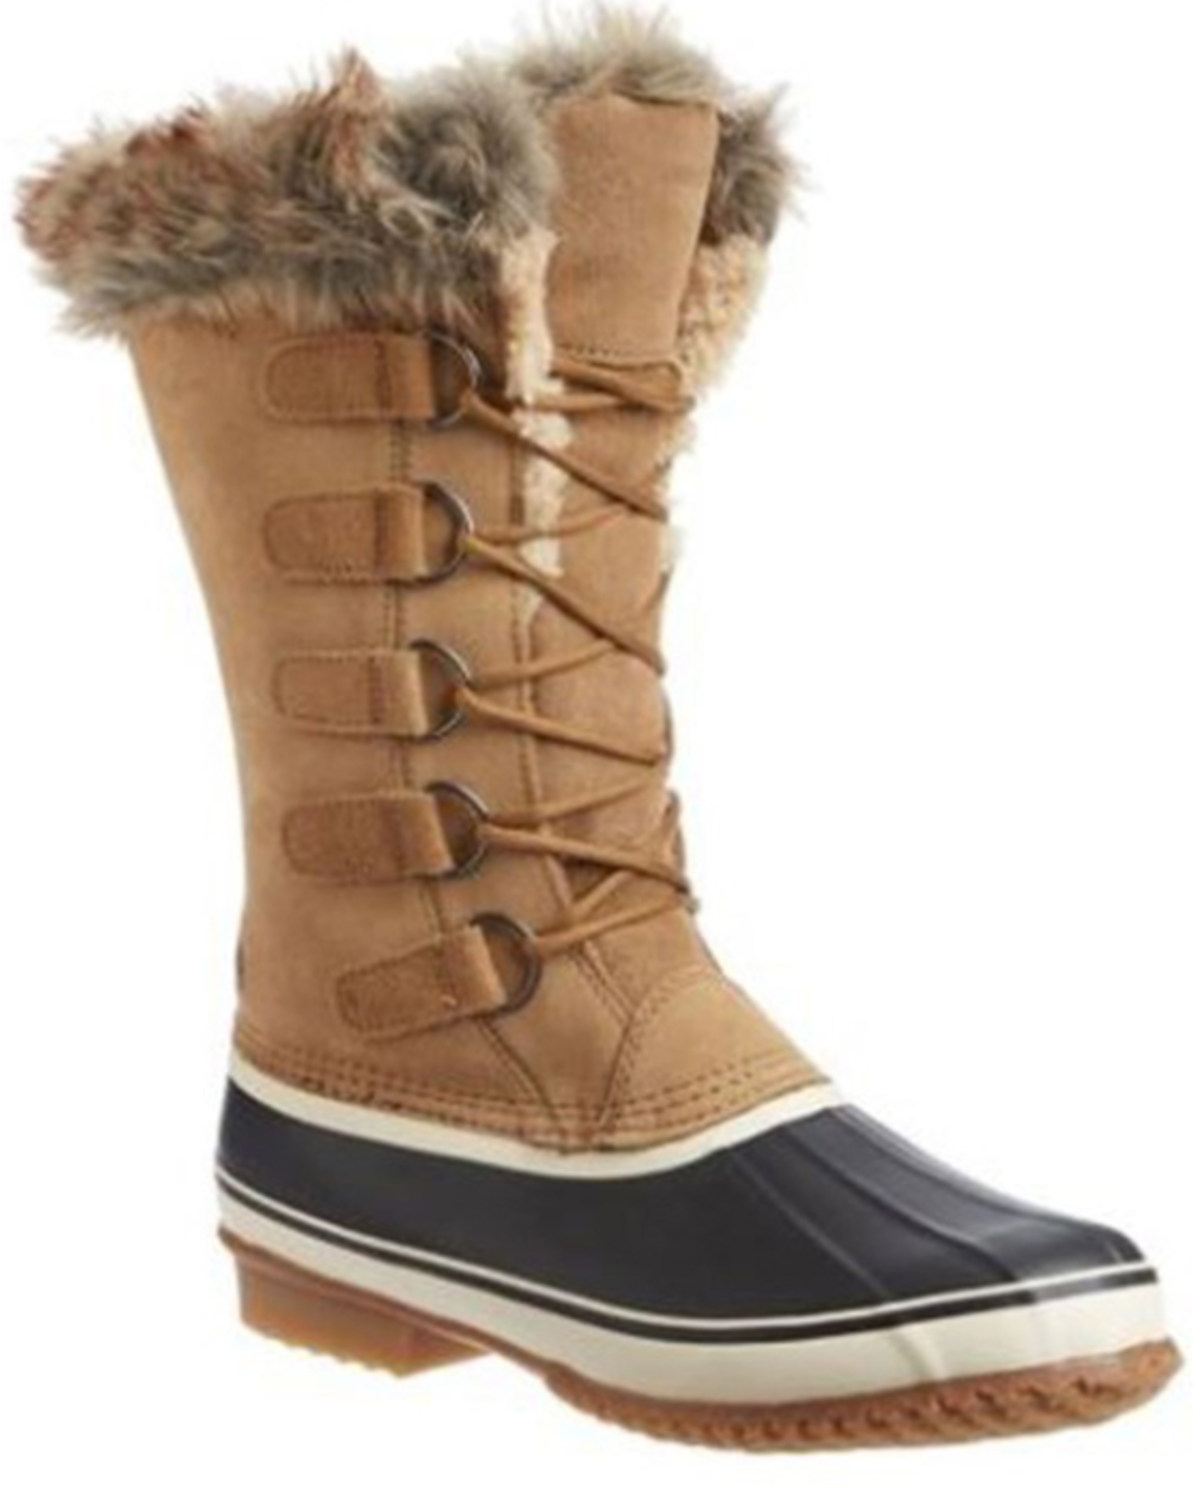 Northside Women's Kathmandu Waterproof Winter Snow Boots - Soft Toe